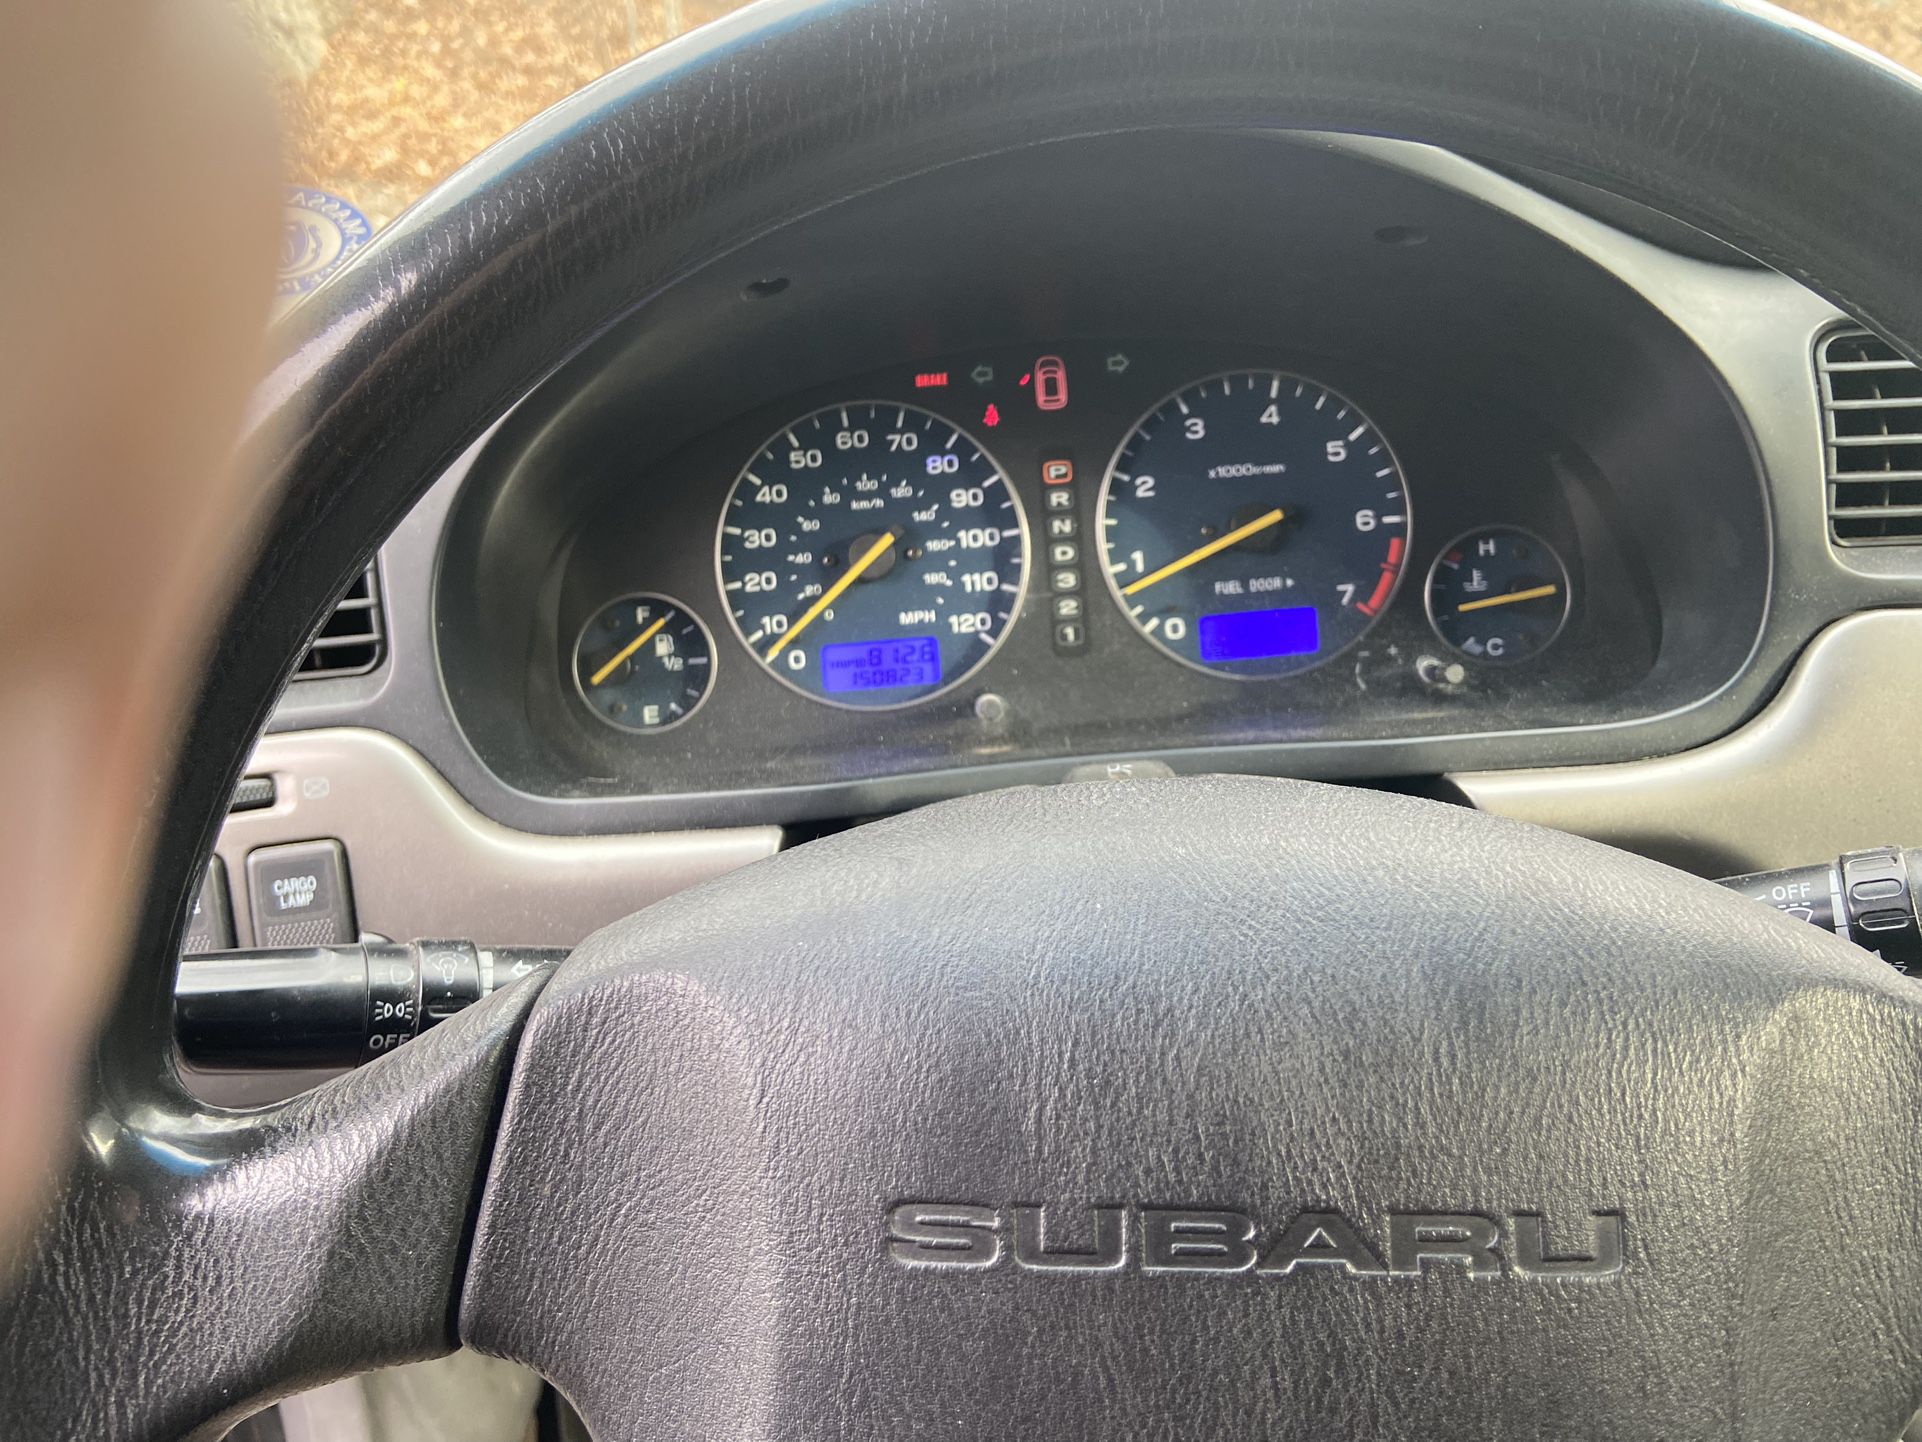 2006 Subaru Baja